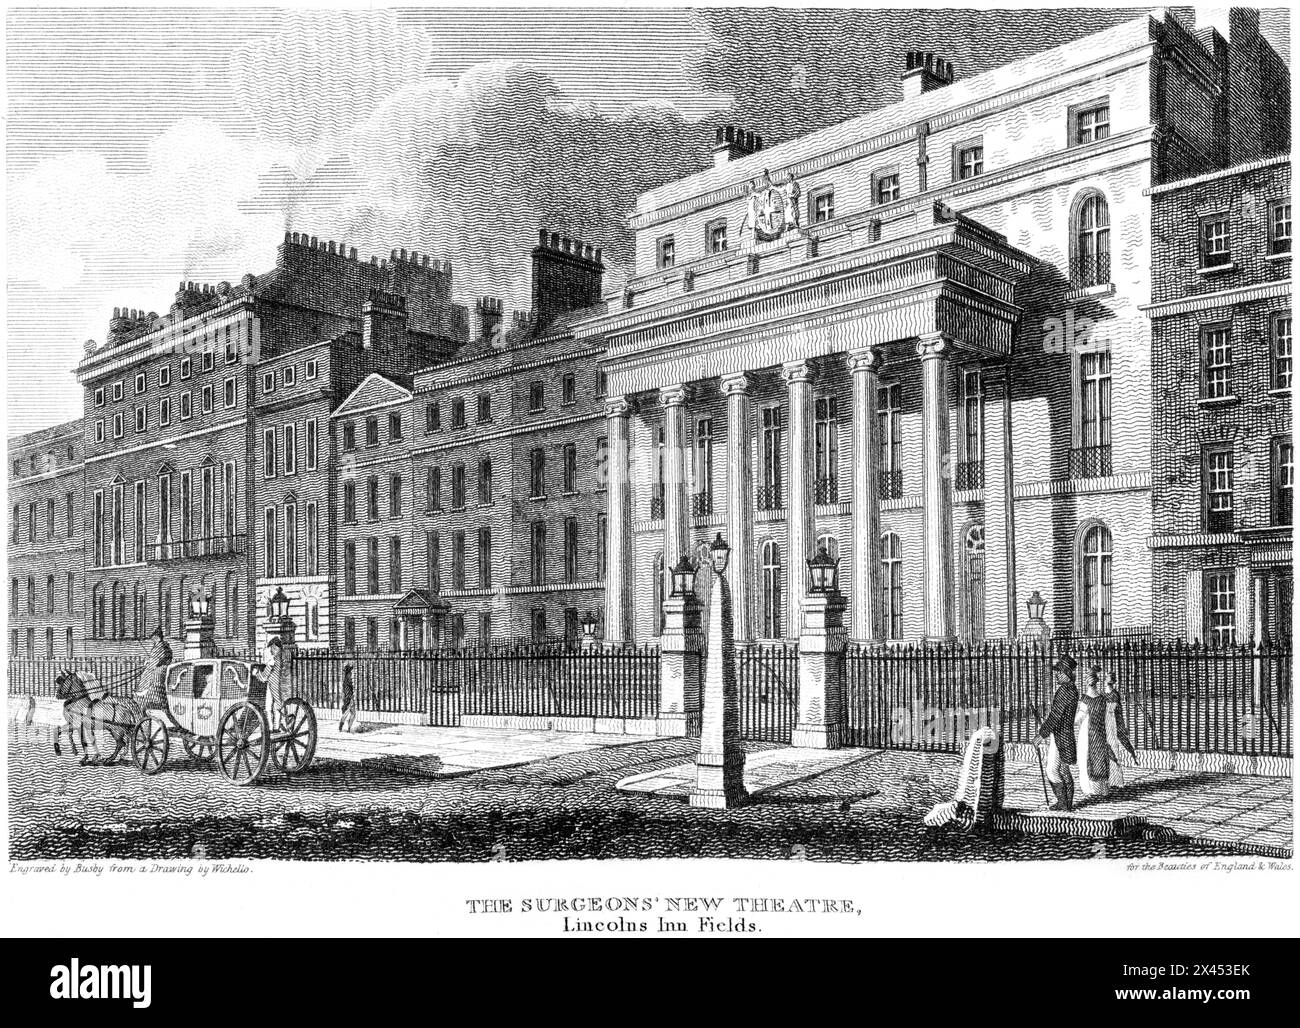 Ein Kupferstich mit dem Titel The Surgeon's New Theatre, Lincolns Inn Fields, London UK, scannt in hoher Auflösung aus einem Buch, das um 1815 erschien. Stockfoto